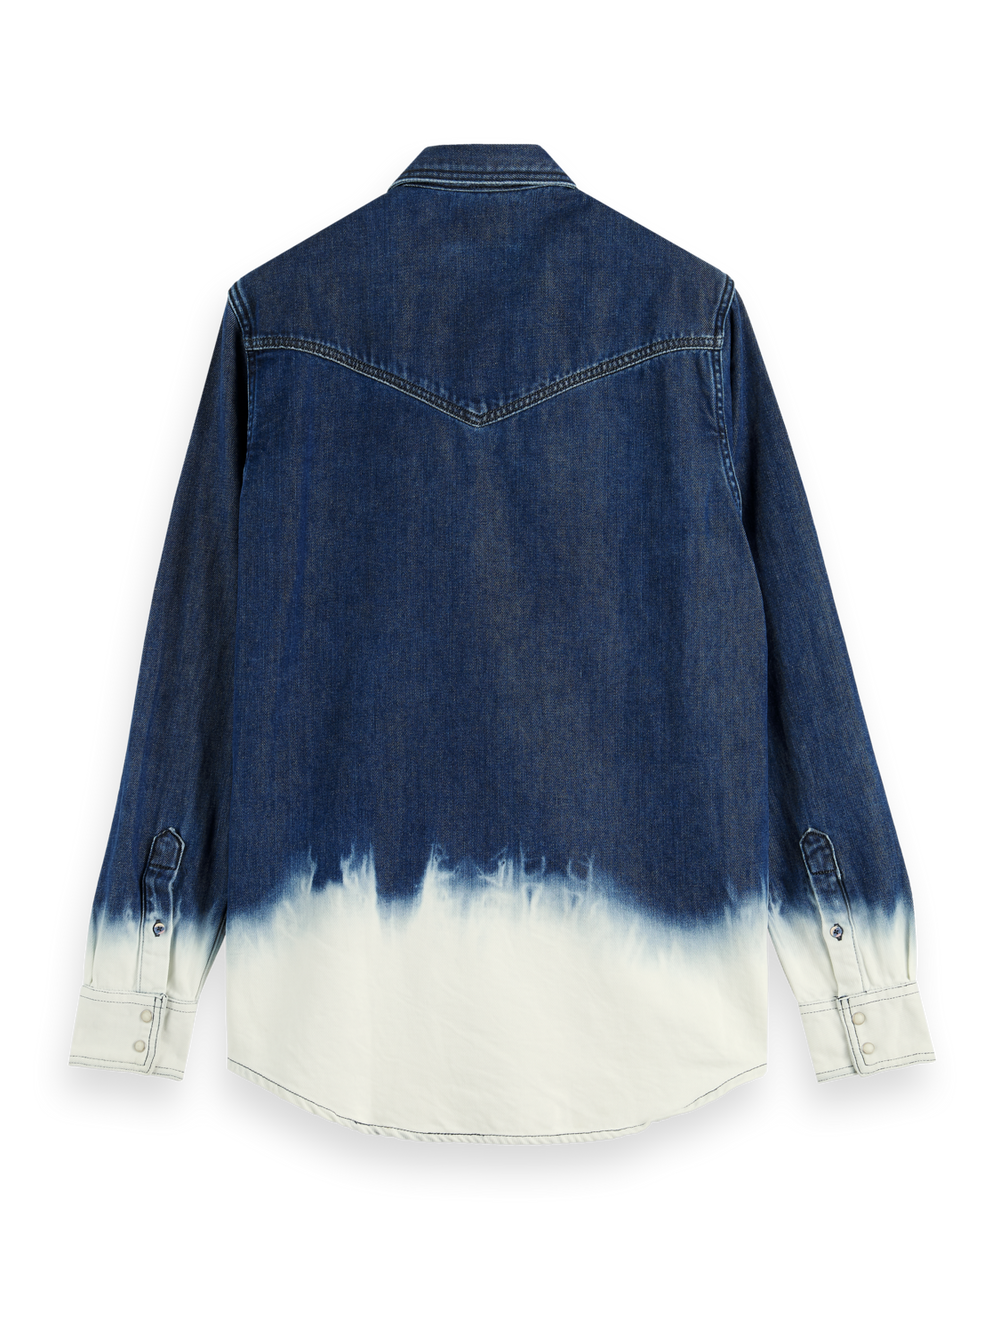 Dip Dye Iconic Denim Western Shirt in Indigo | Buster McGee